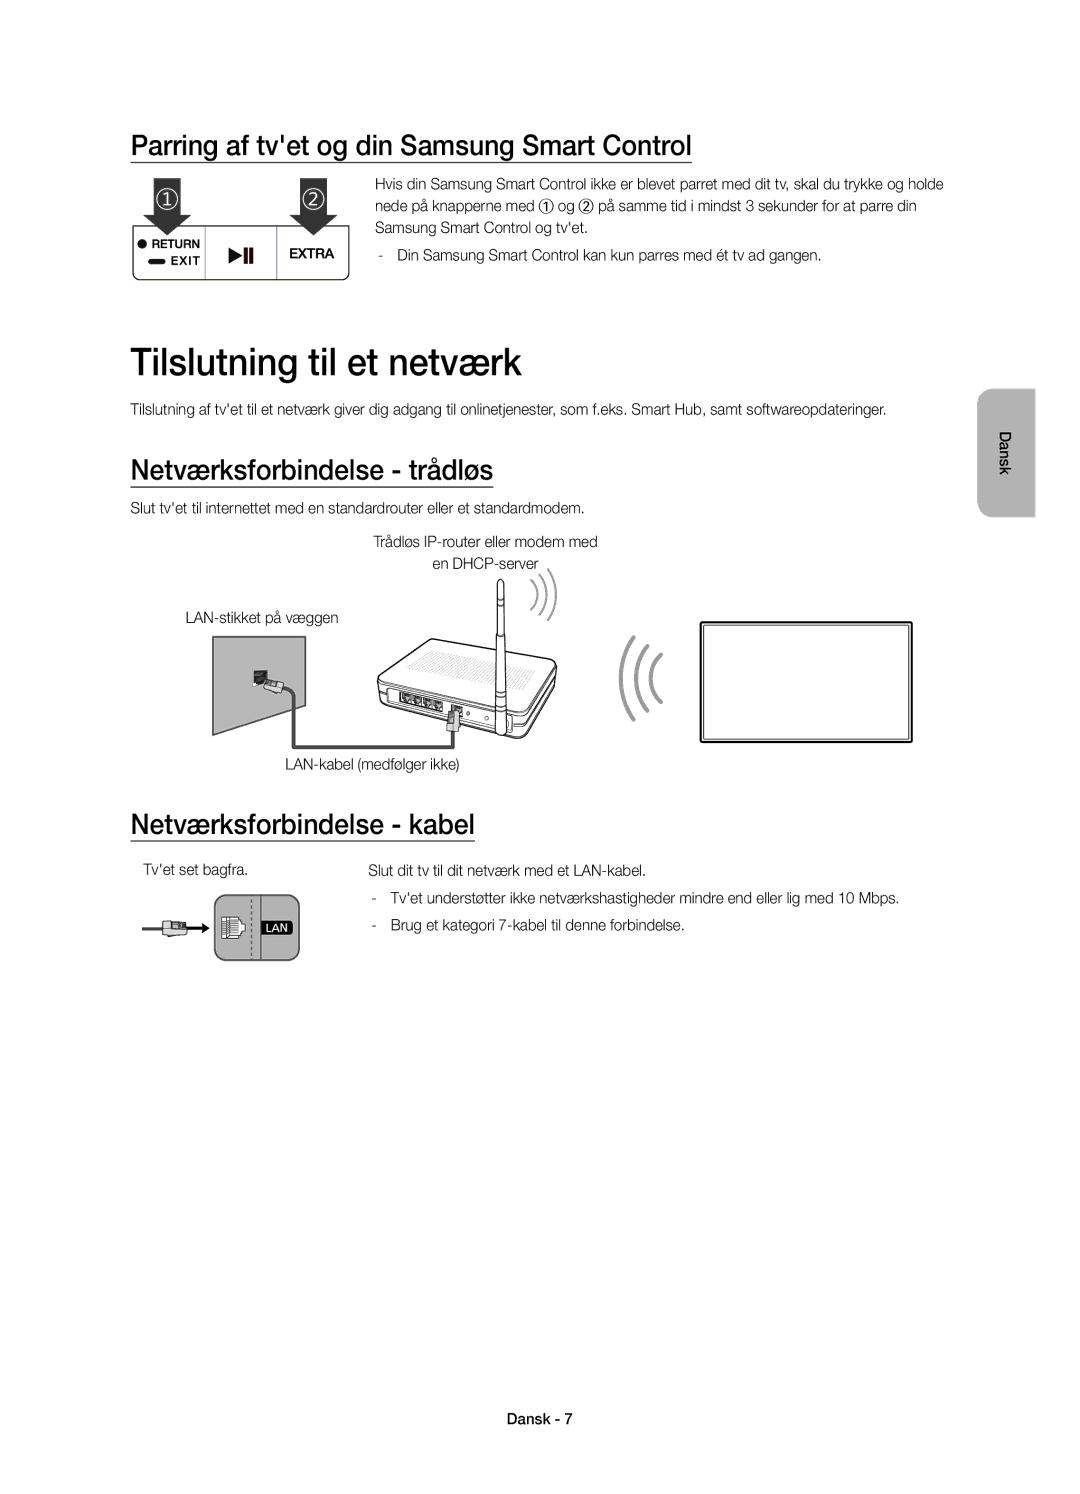 Samsung UE48JU7505TXXE Tilslutning til et netværk, Parring af tvet og din Samsung Smart Control, Netværksforbindelse kabel 